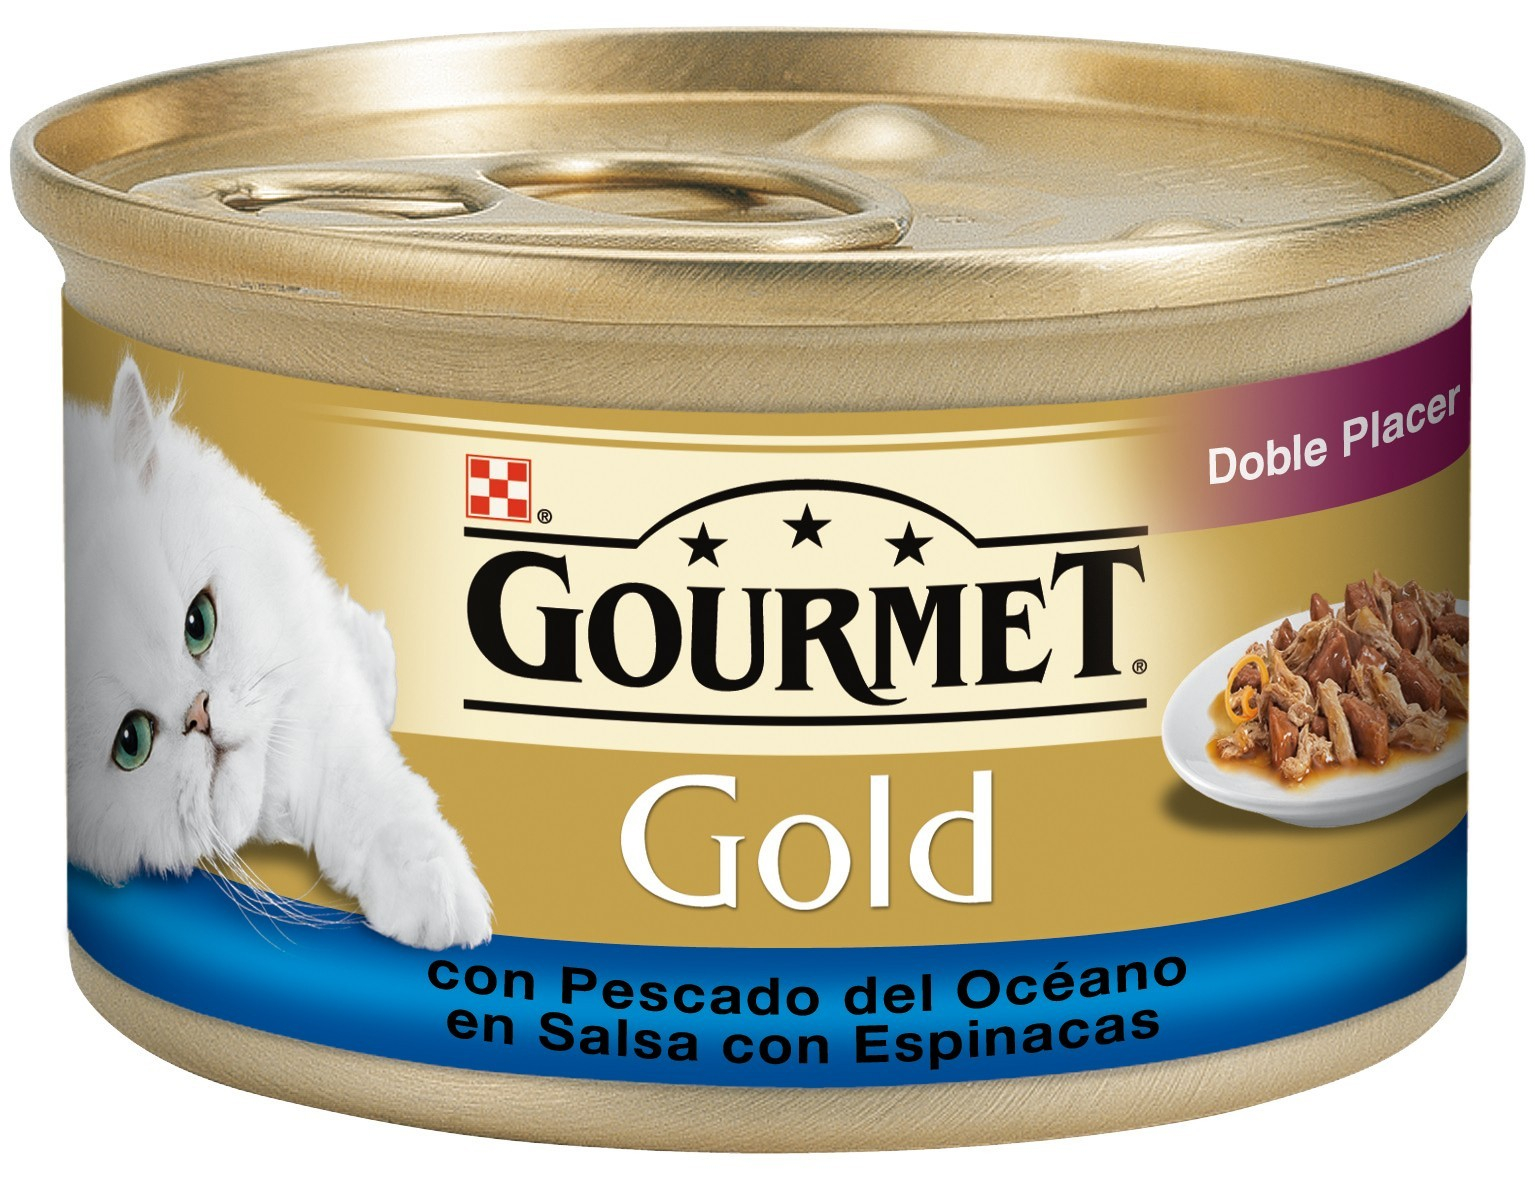 GOURMET Gold Double Délice ração húmida para gato com vários sabores